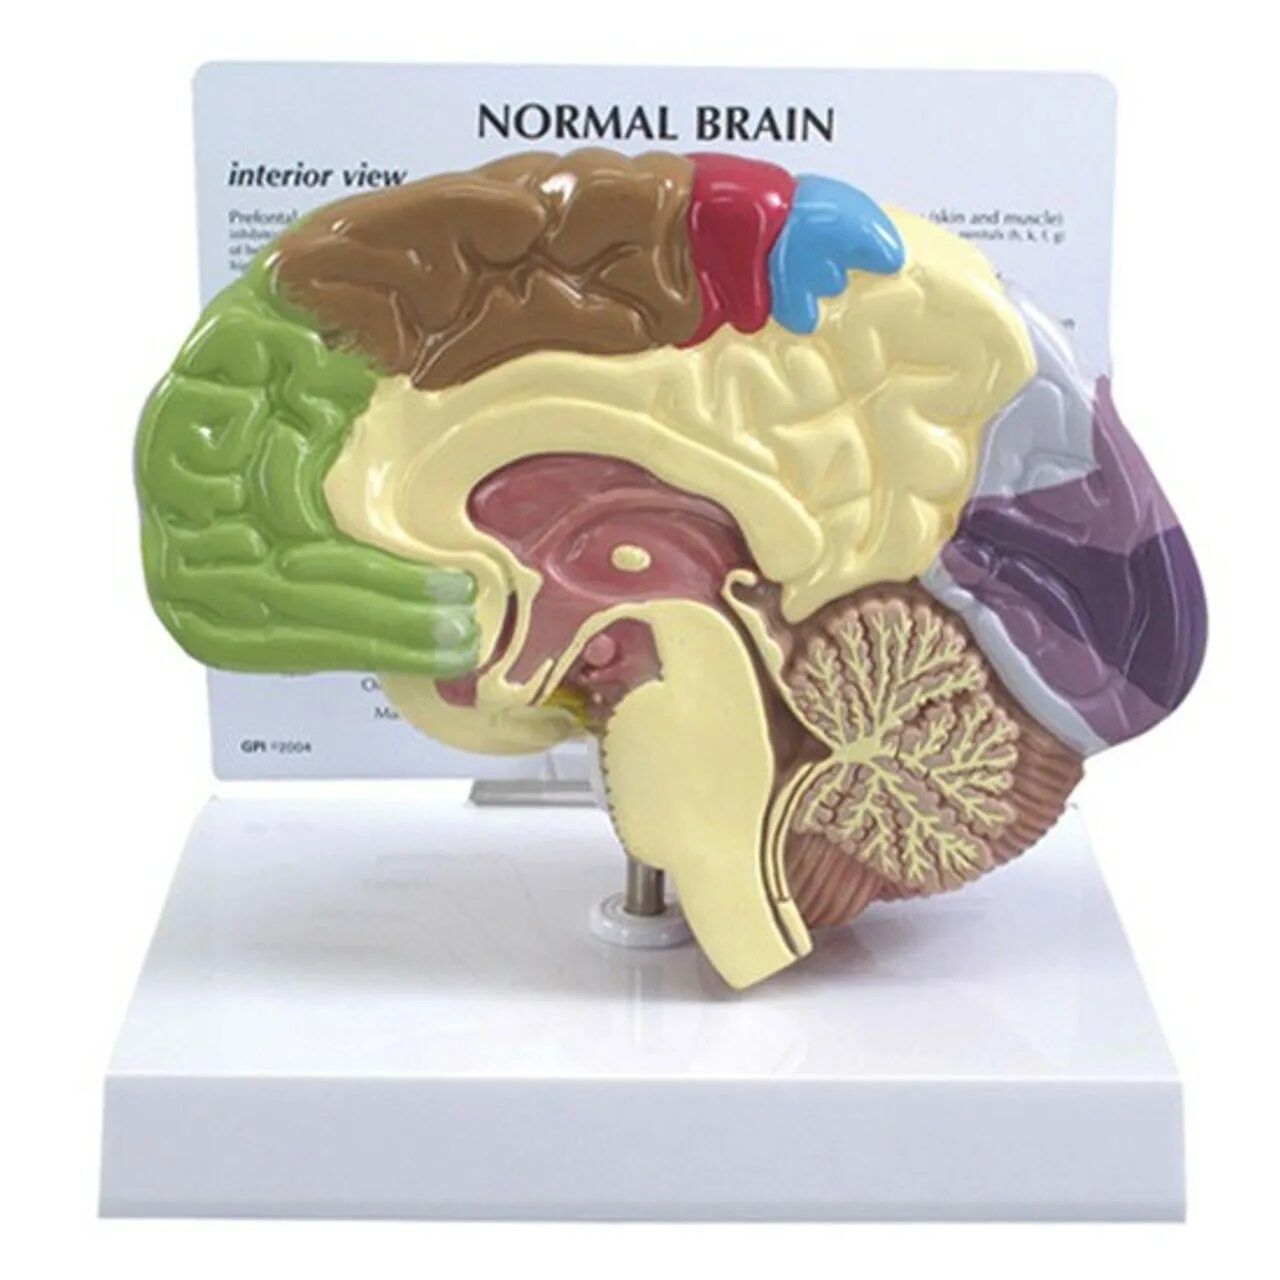 Муляж мозга. Анатомическая модель мозга. Макет головного мозга. Муляж головного мозга человека.